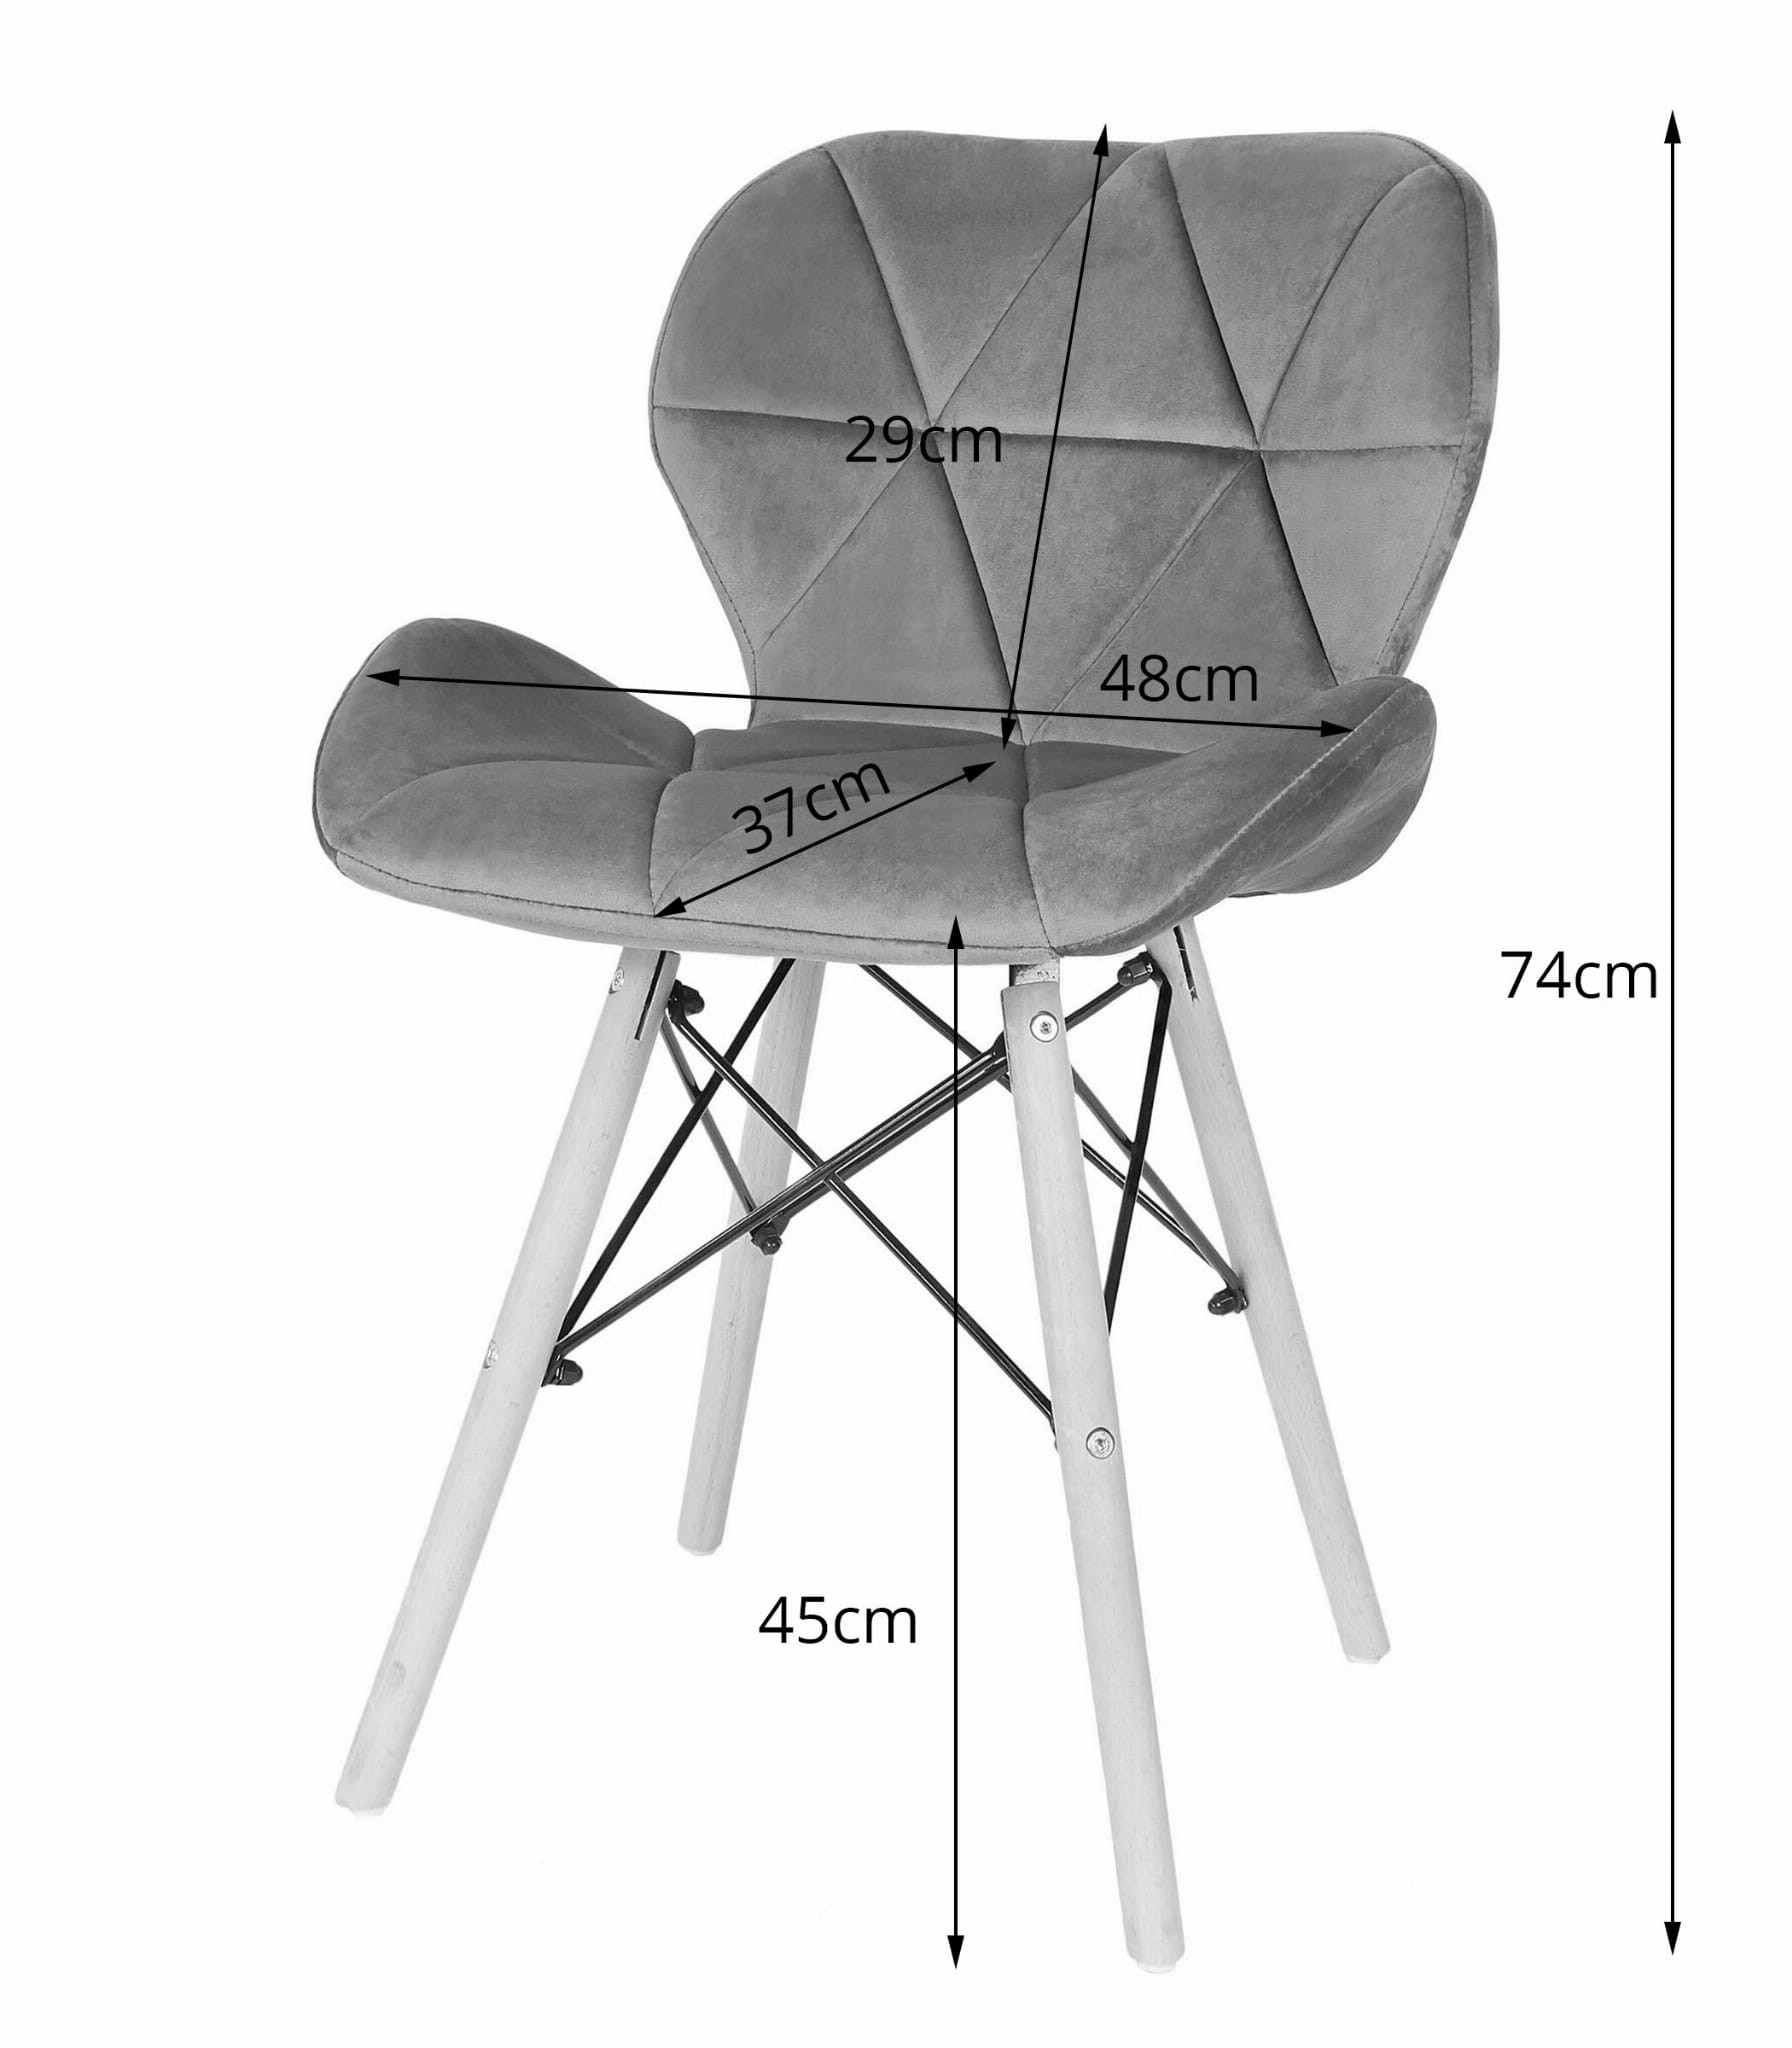 Jedálenská stolička LAGO granátová (hnedé nohy)